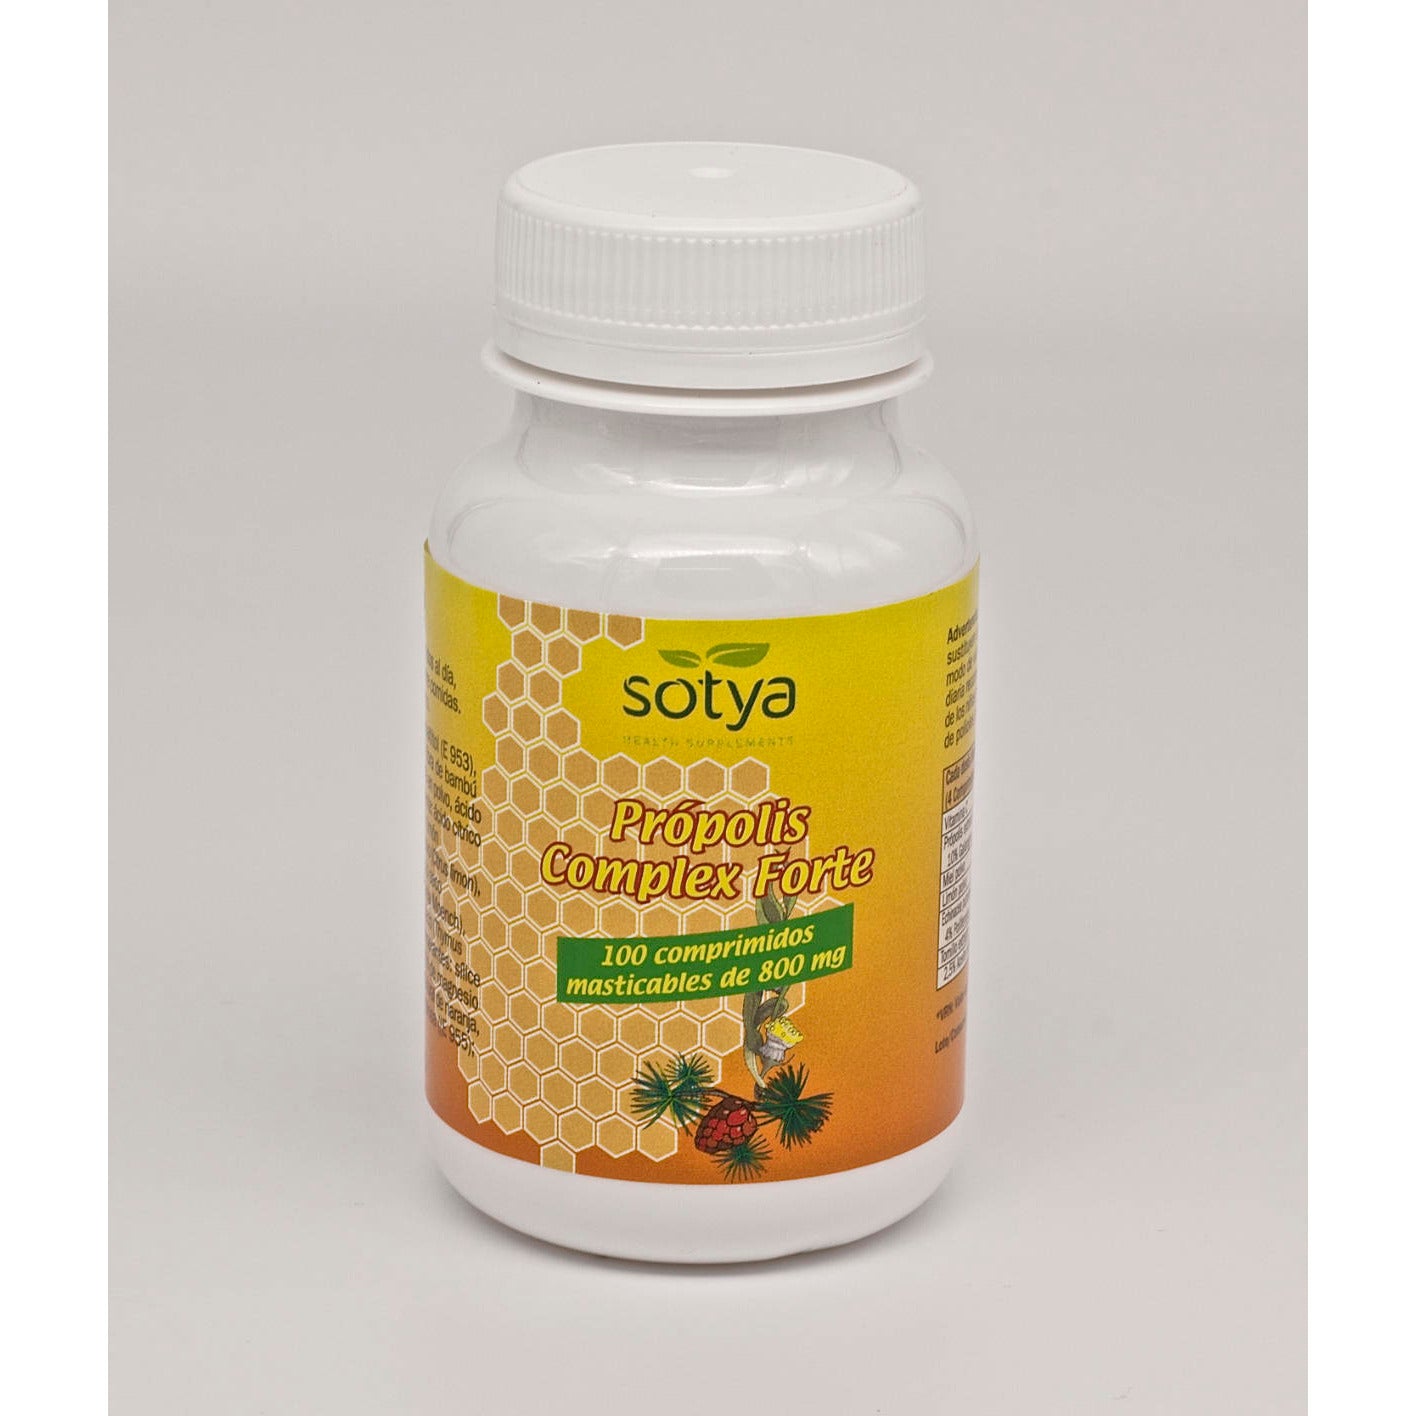 Sotya-Propolis-Complex-Forte-100-Comprimidos-Biopharmacia,-Parafarmacia-online